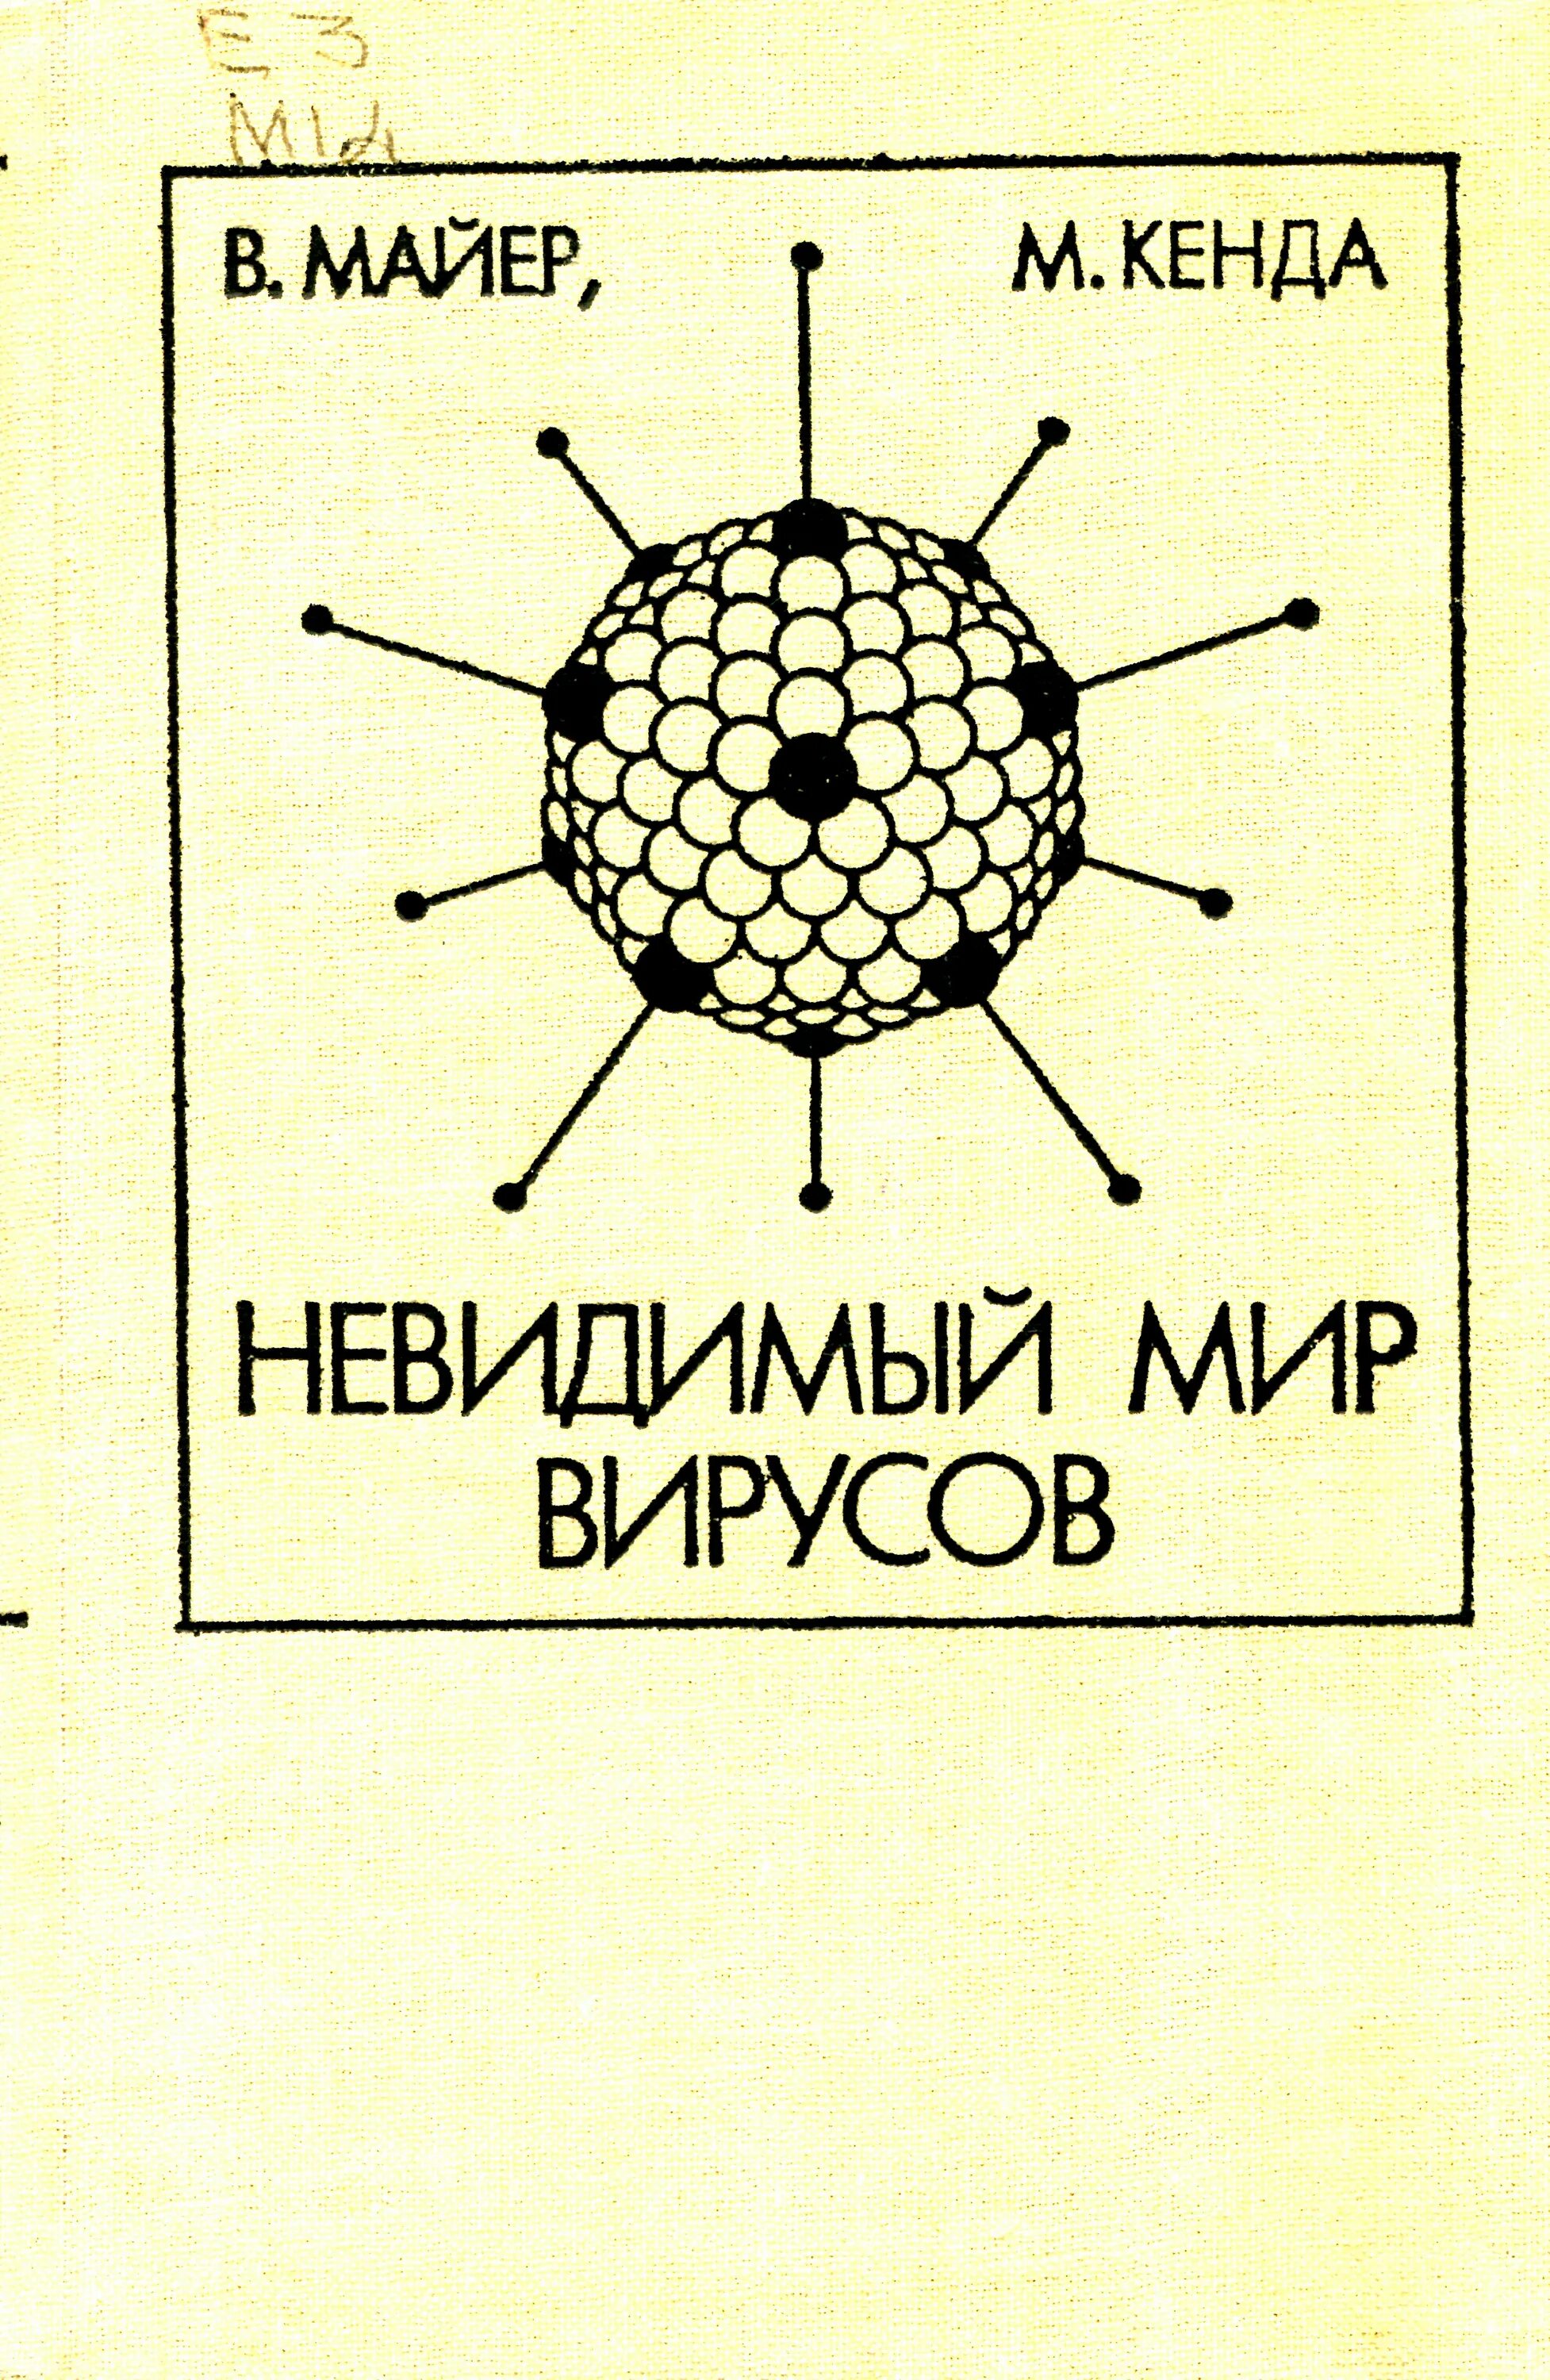 Книги про вирусы. Мир вирусов. Советская книга о вирусах. Научные книги о вирусах.